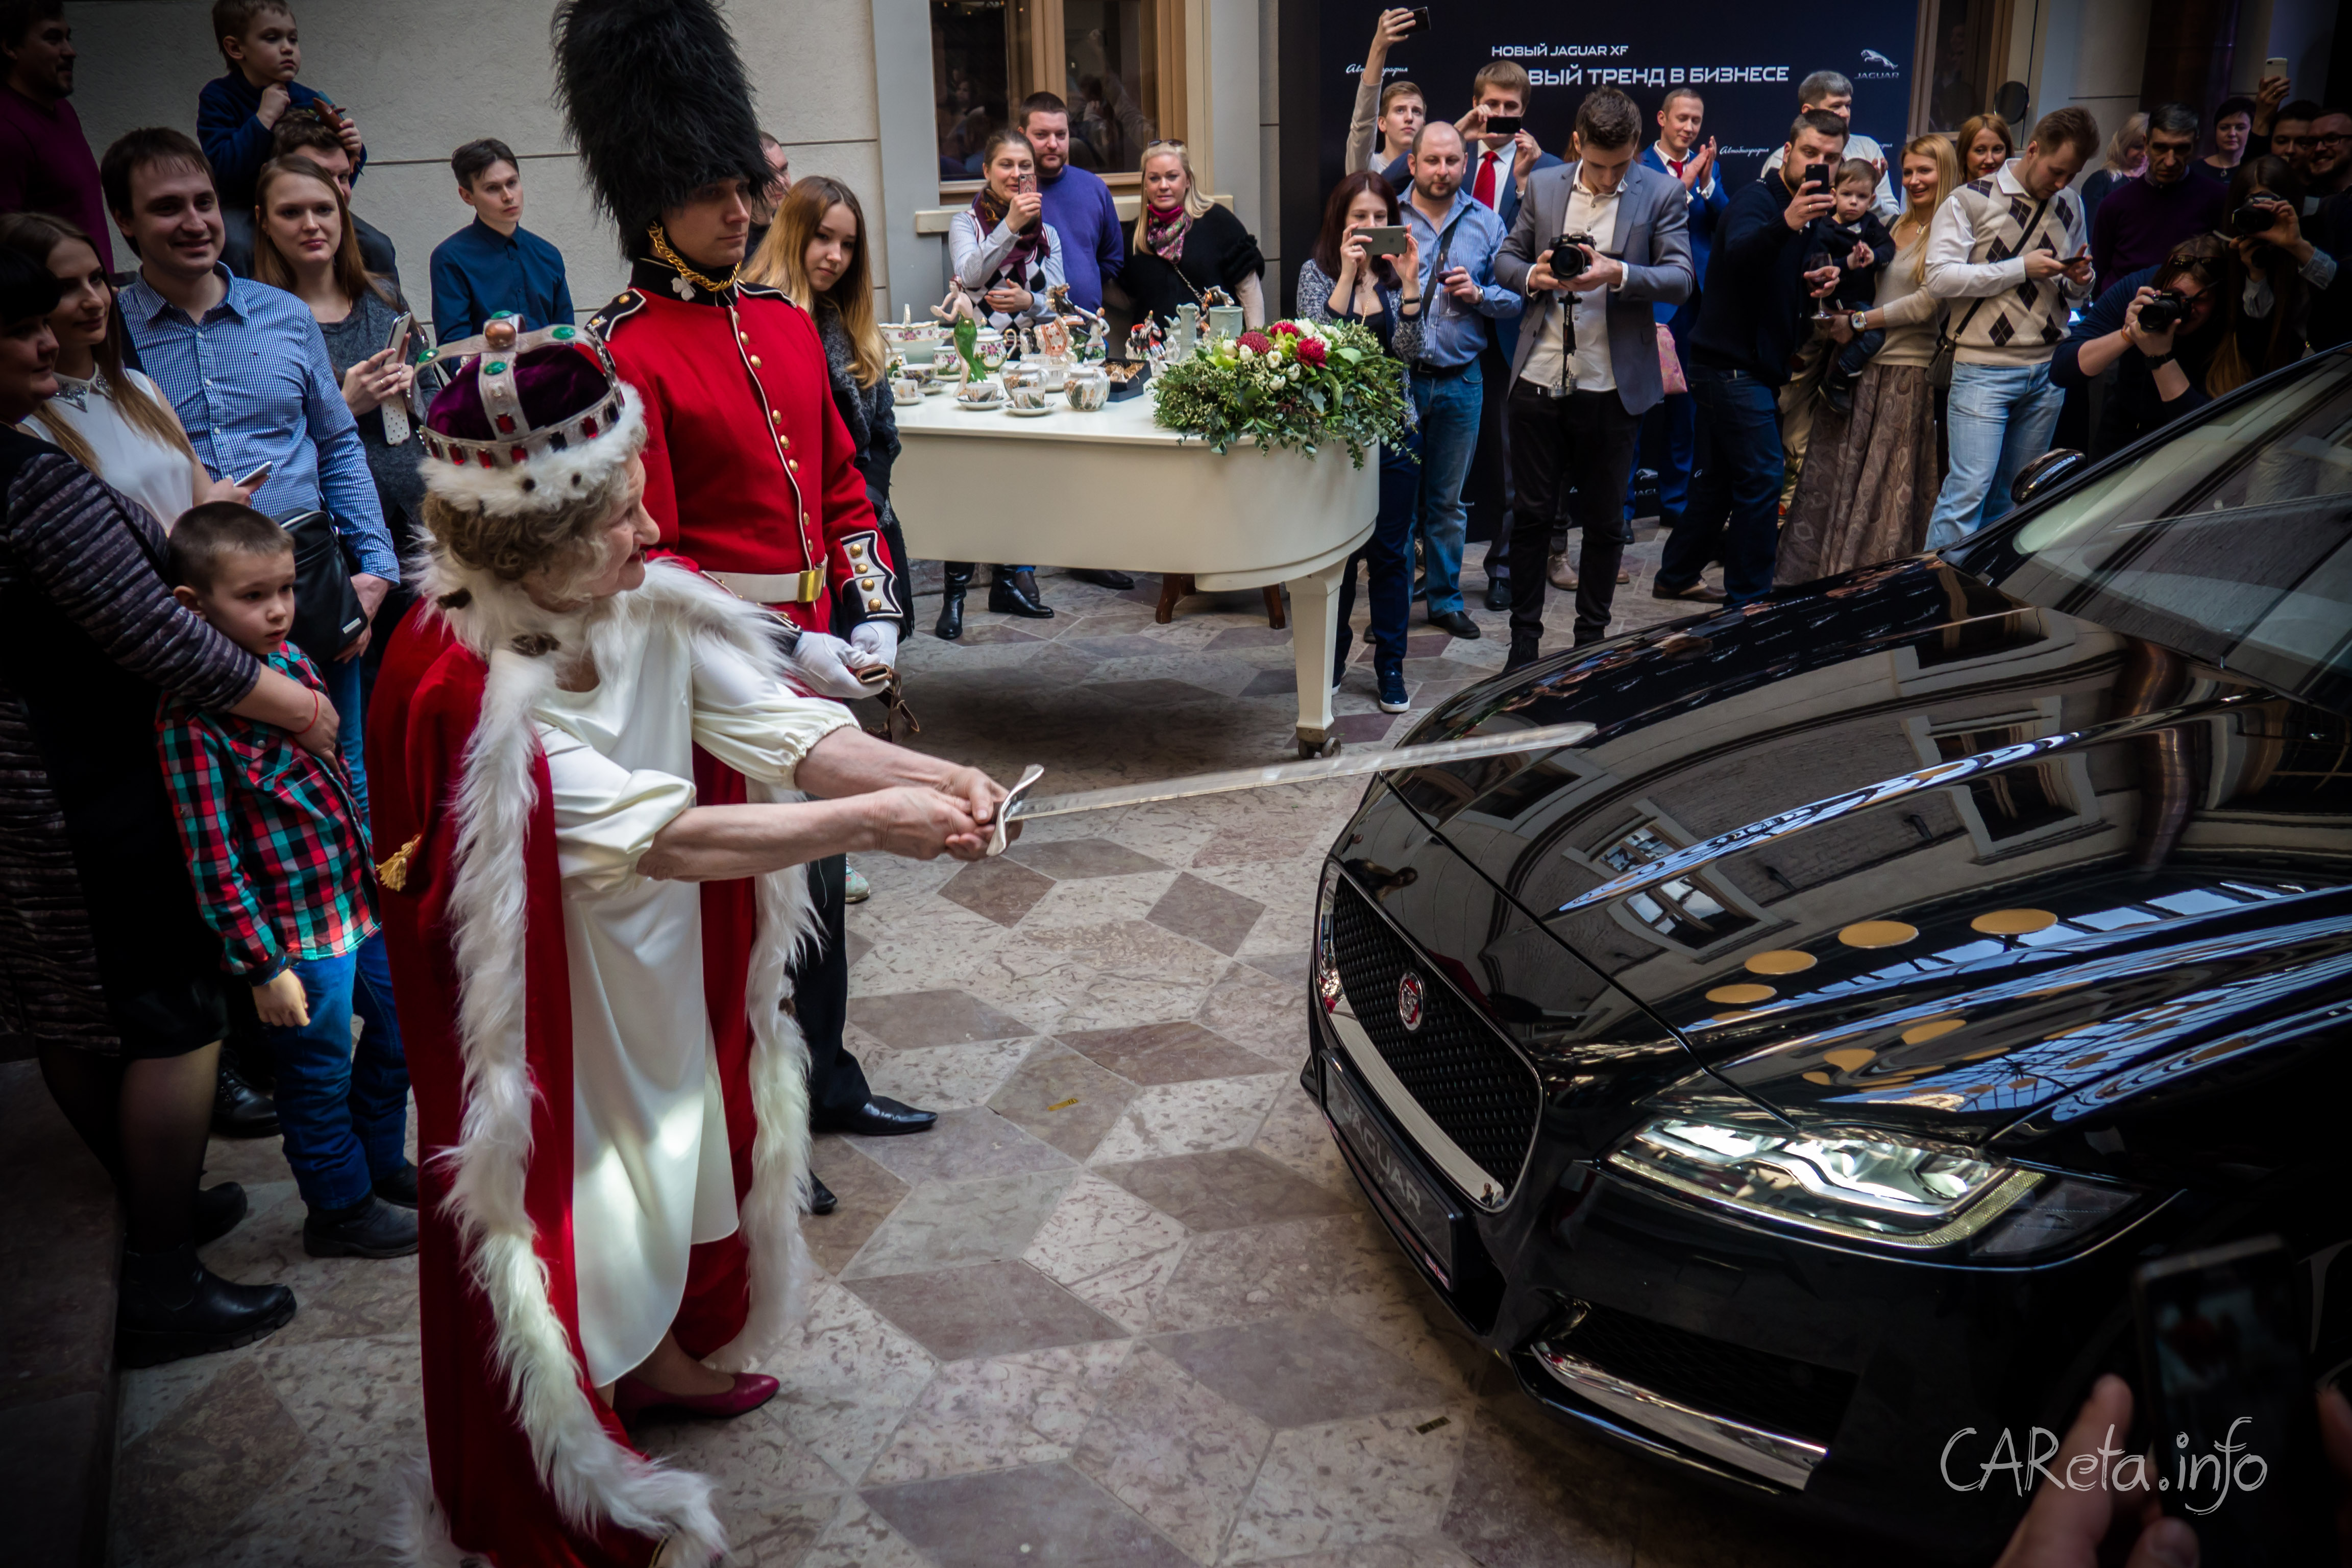 Jaguar XF: посвящение в рыцари